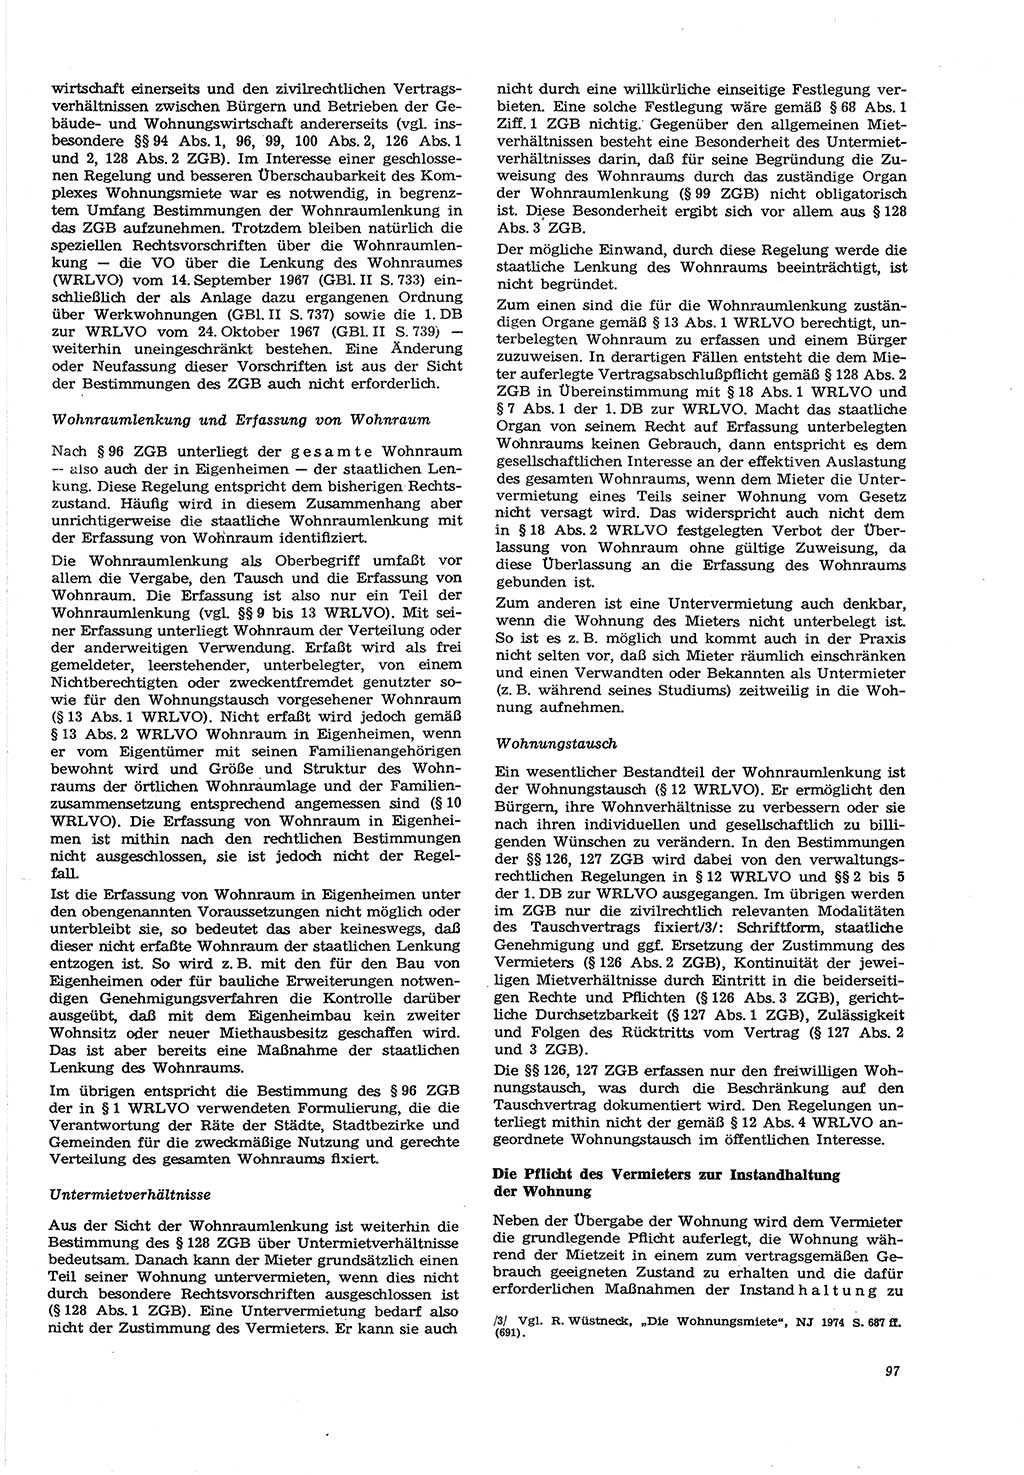 Neue Justiz (NJ), Zeitschrift für Recht und Rechtswissenschaft [Deutsche Demokratische Republik (DDR)], 30. Jahrgang 1976, Seite 97 (NJ DDR 1976, S. 97)